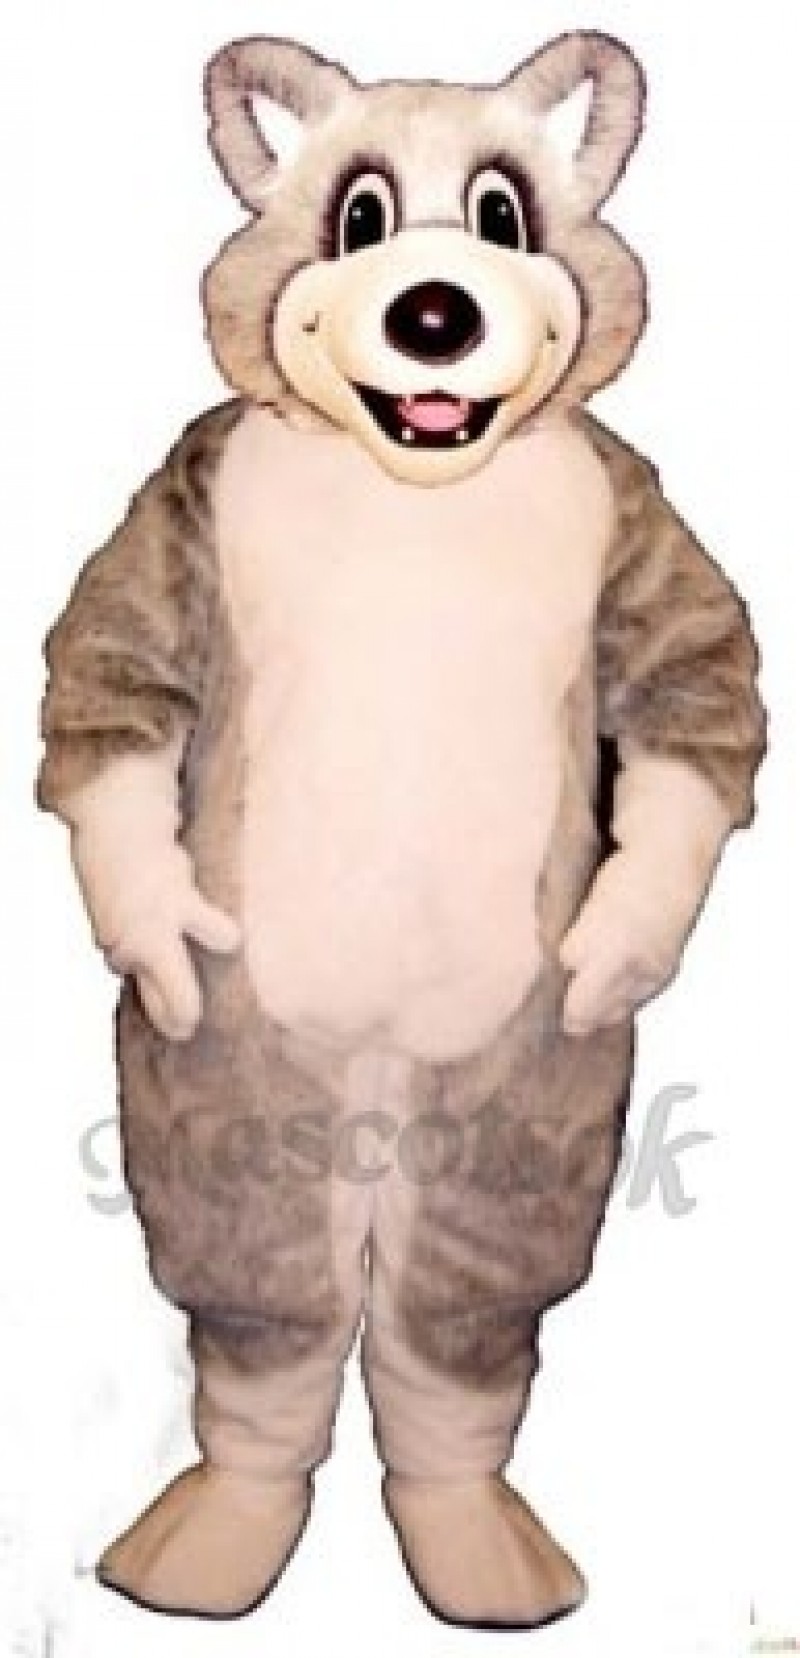 Cute Baby Husky Dog Mascot Costume